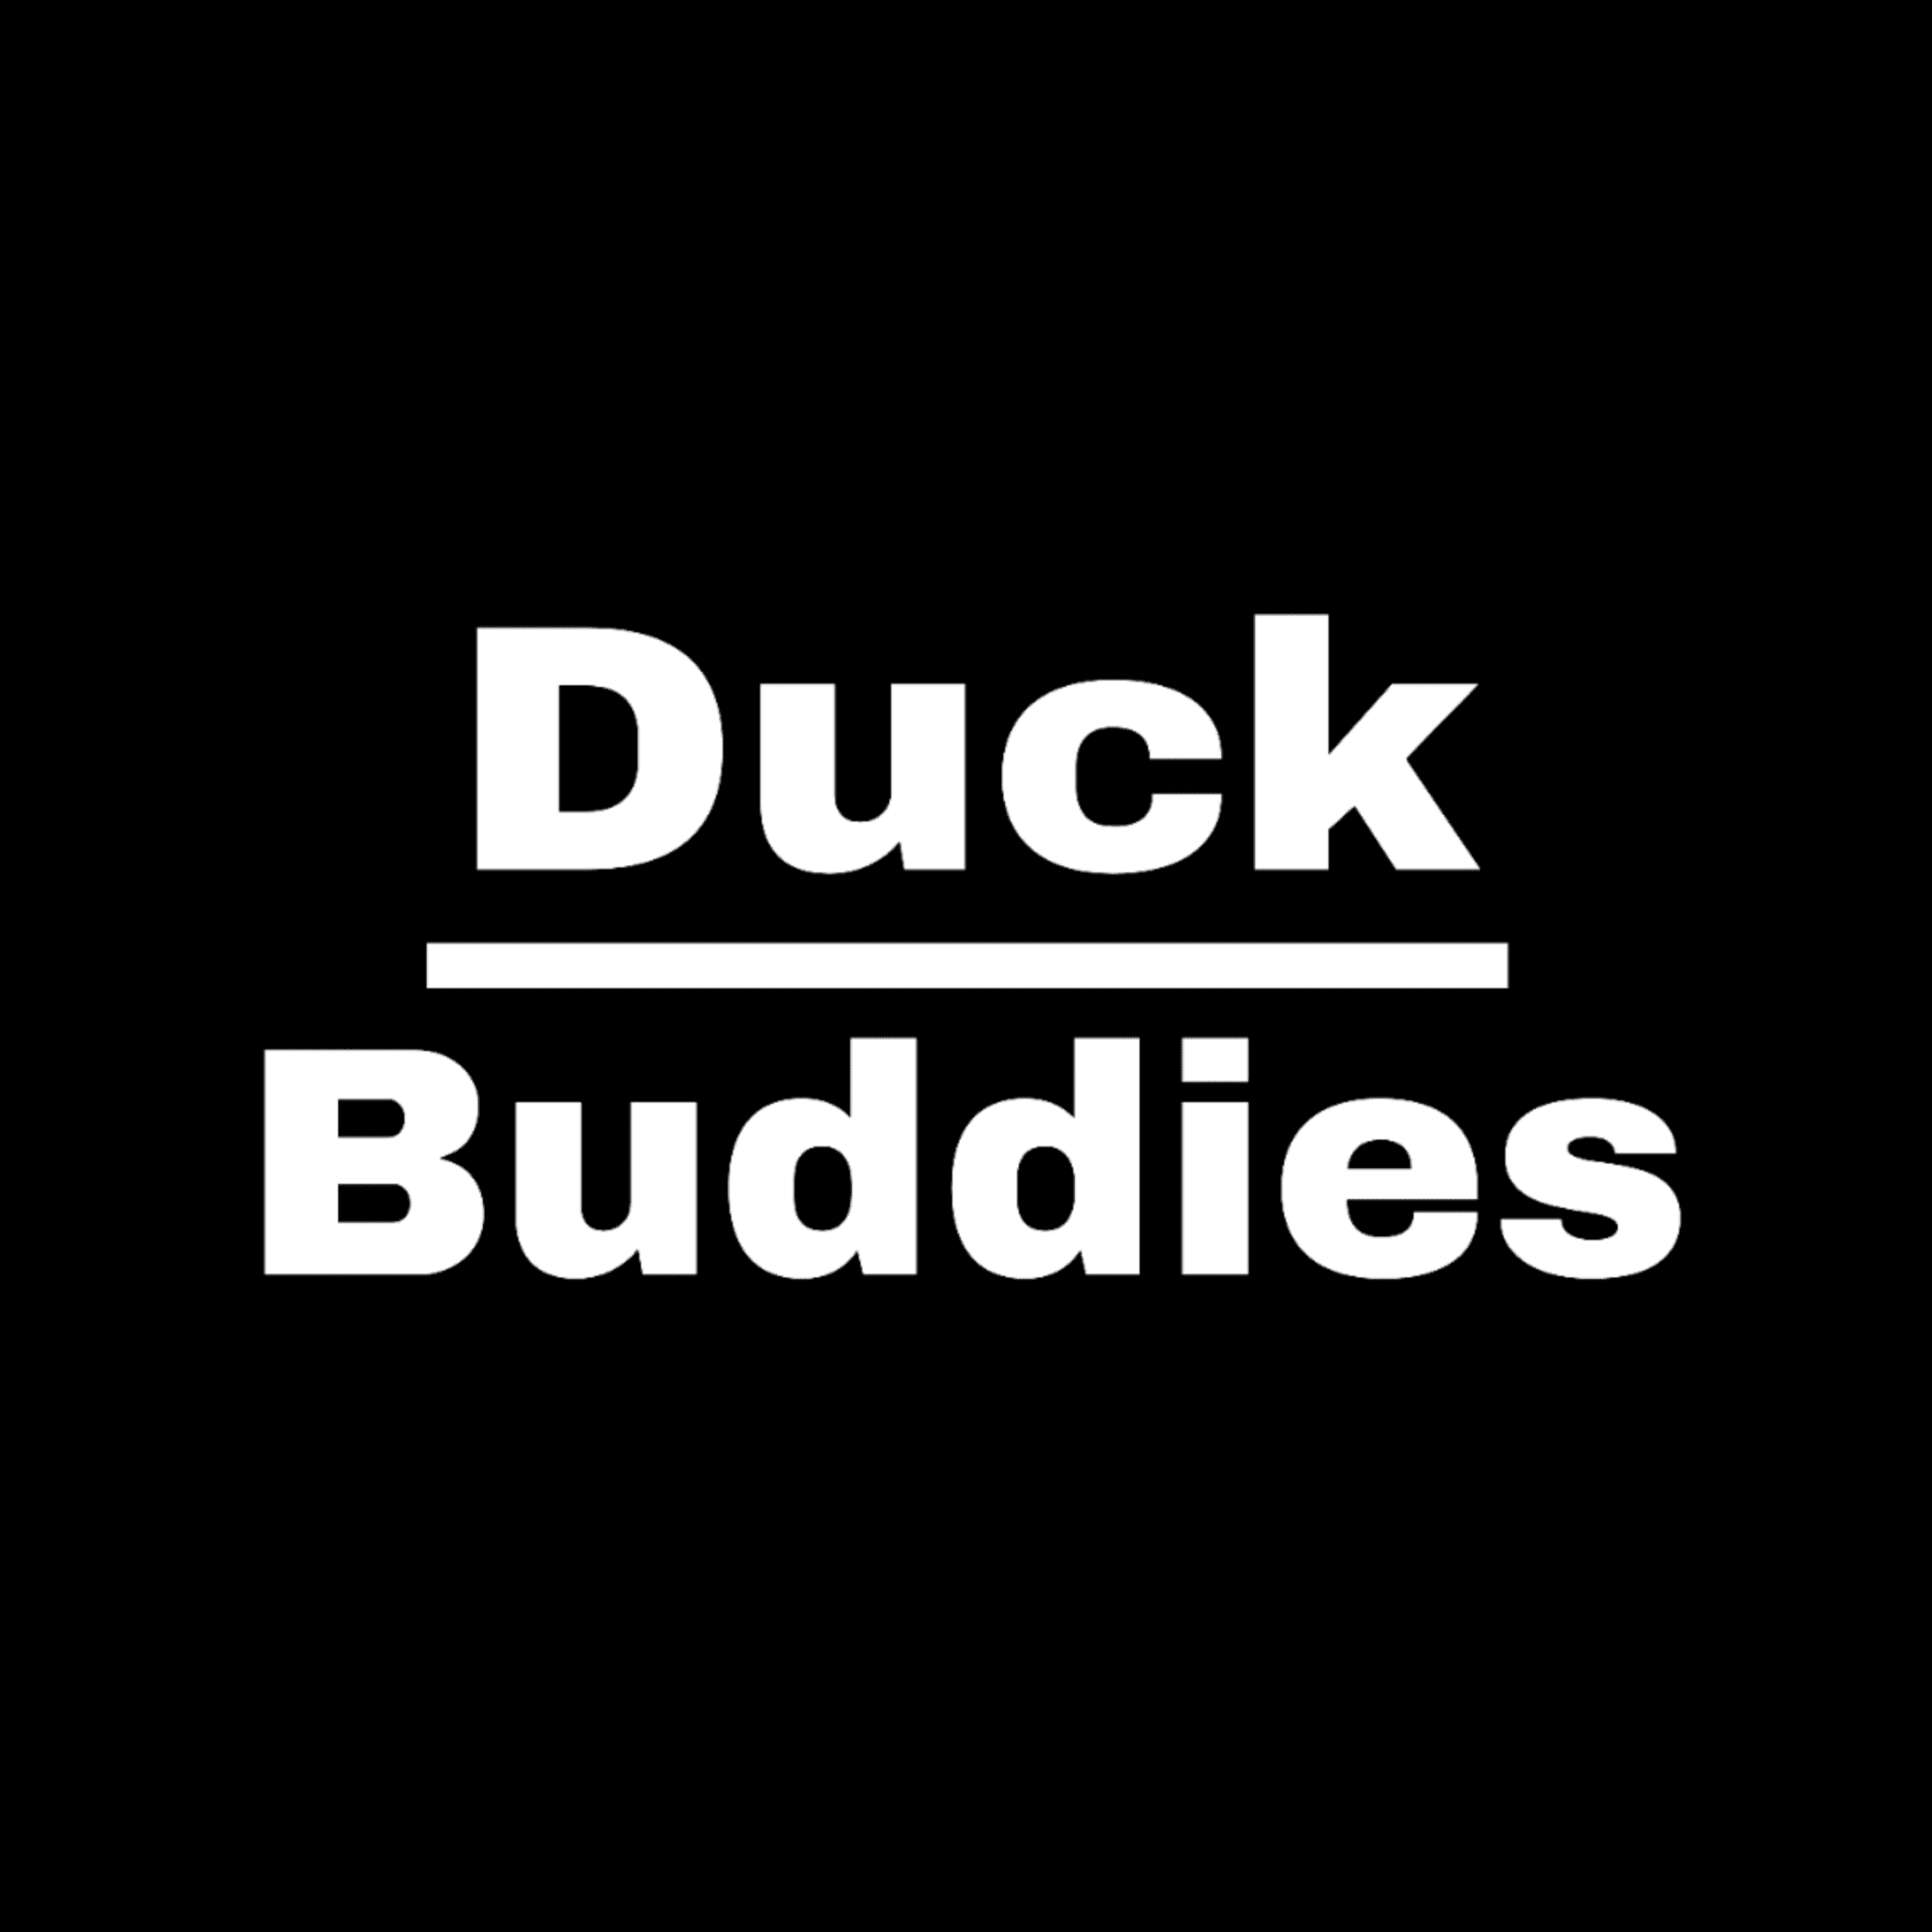 Duckbuddies